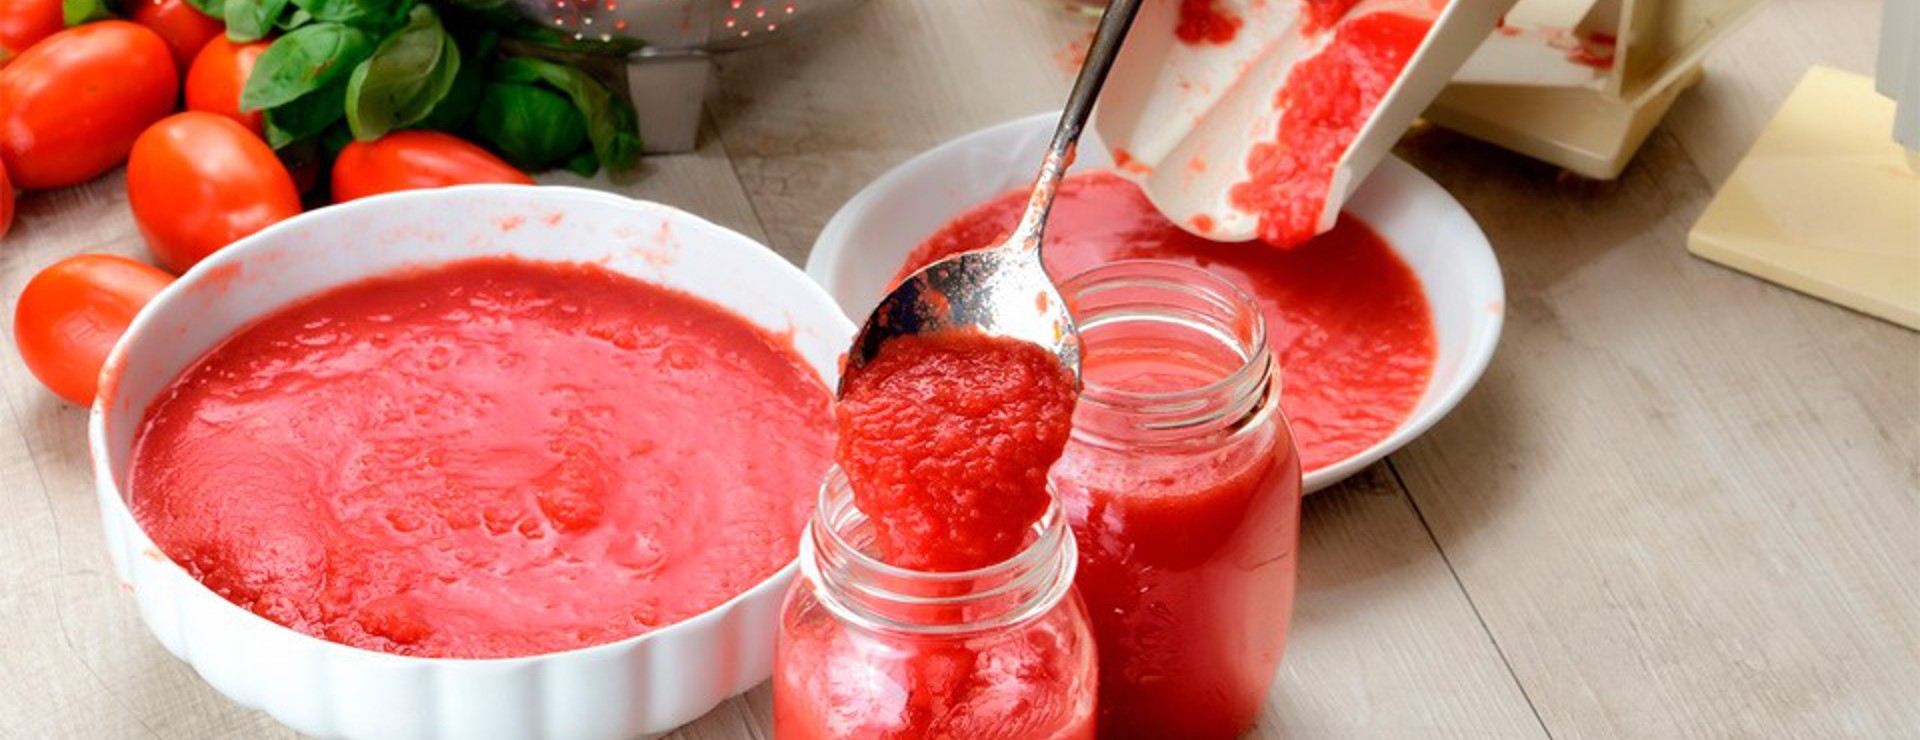 Fare le bottiglie di pomodoro: la tradizione abruzzese